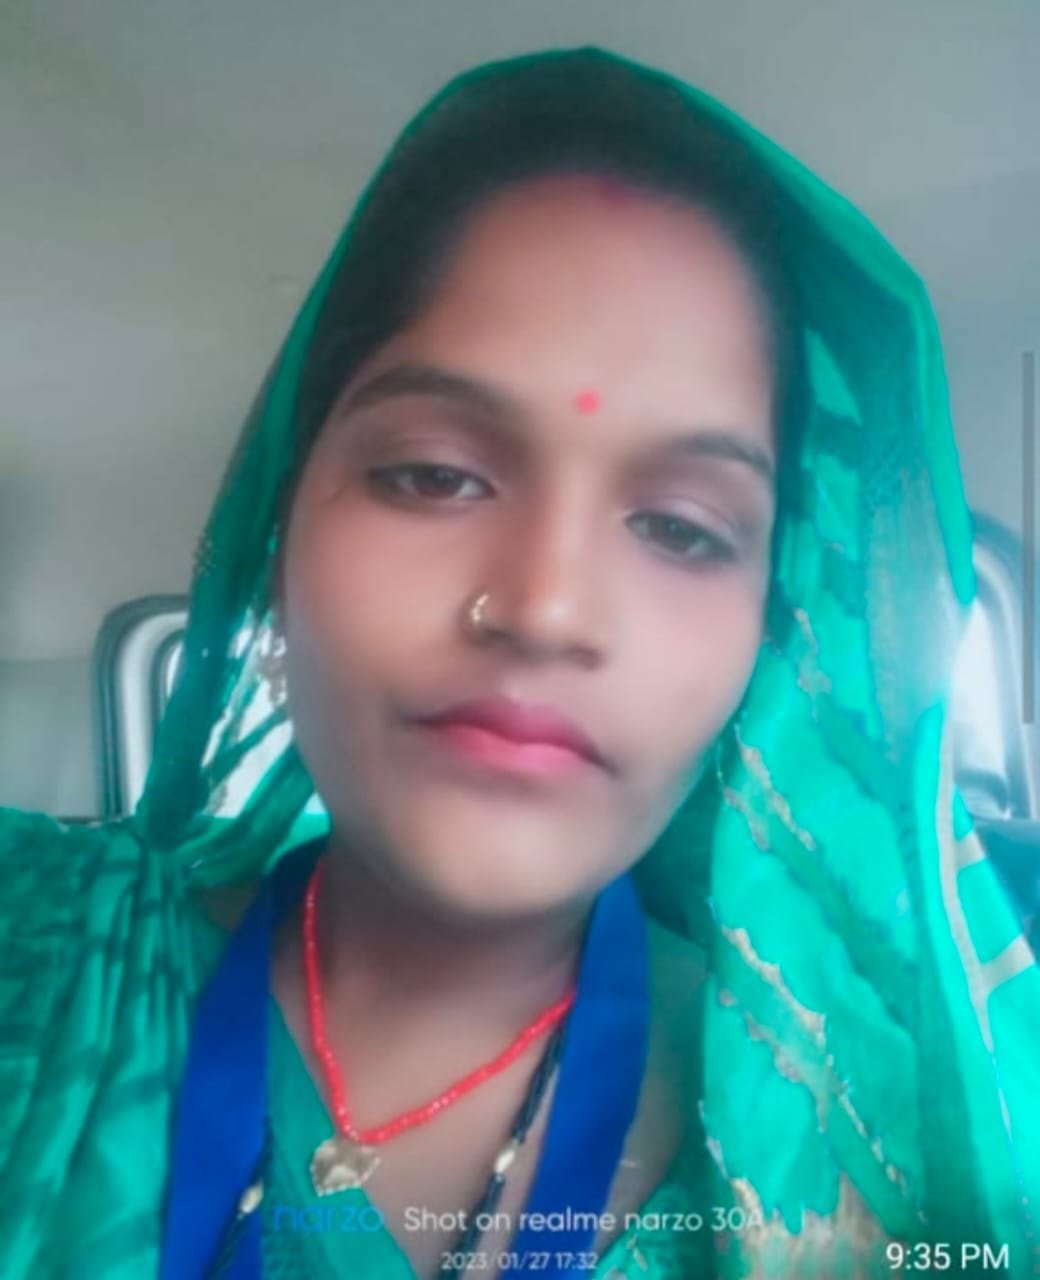 भाजपा में जाने की विरोधी फैला रहे अफवाह: सविता